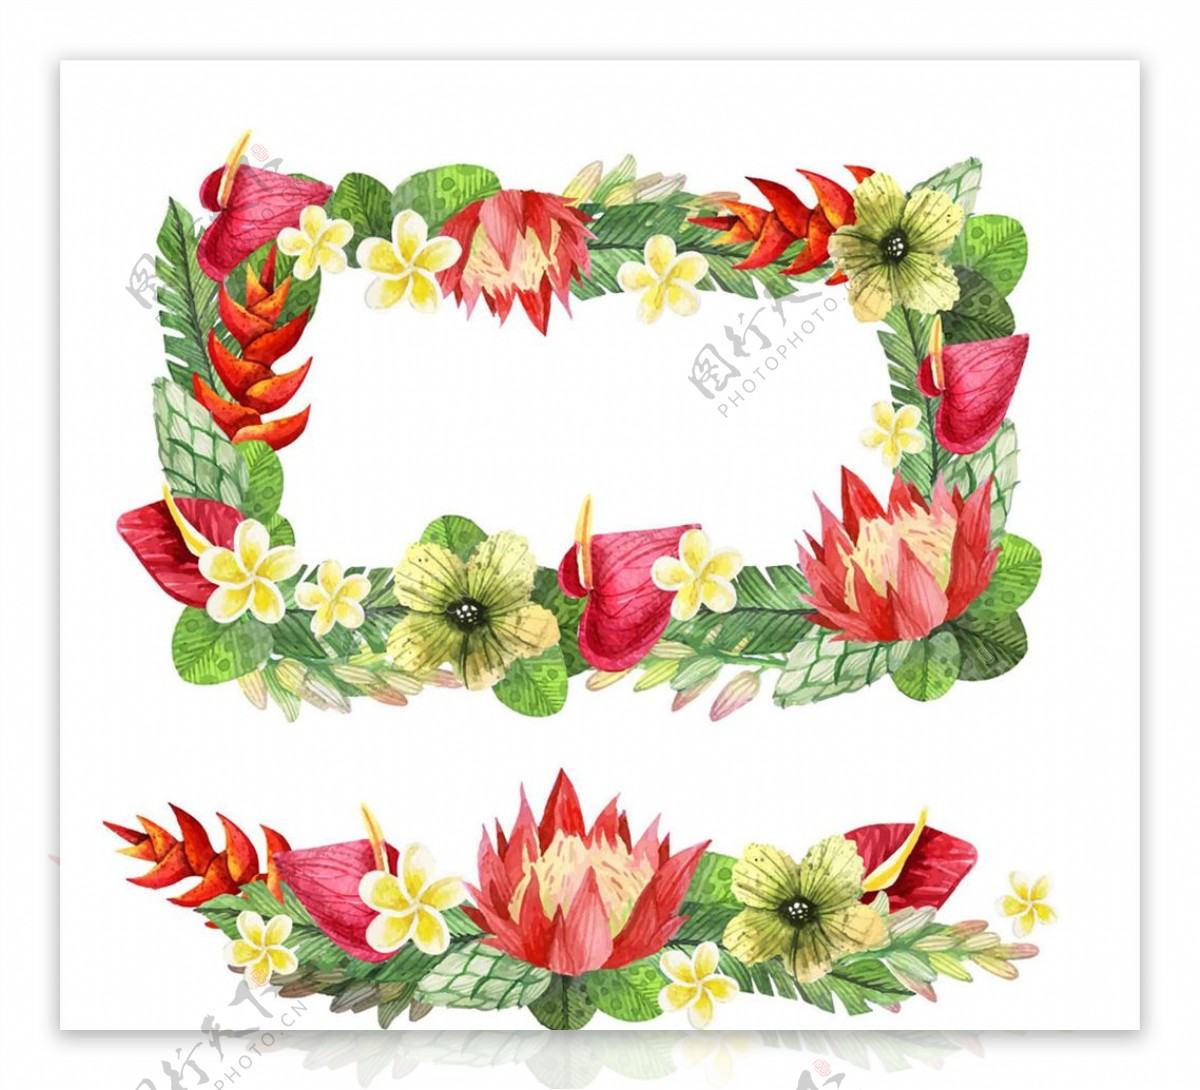 彩色手绘热带花卉框架矢量素材